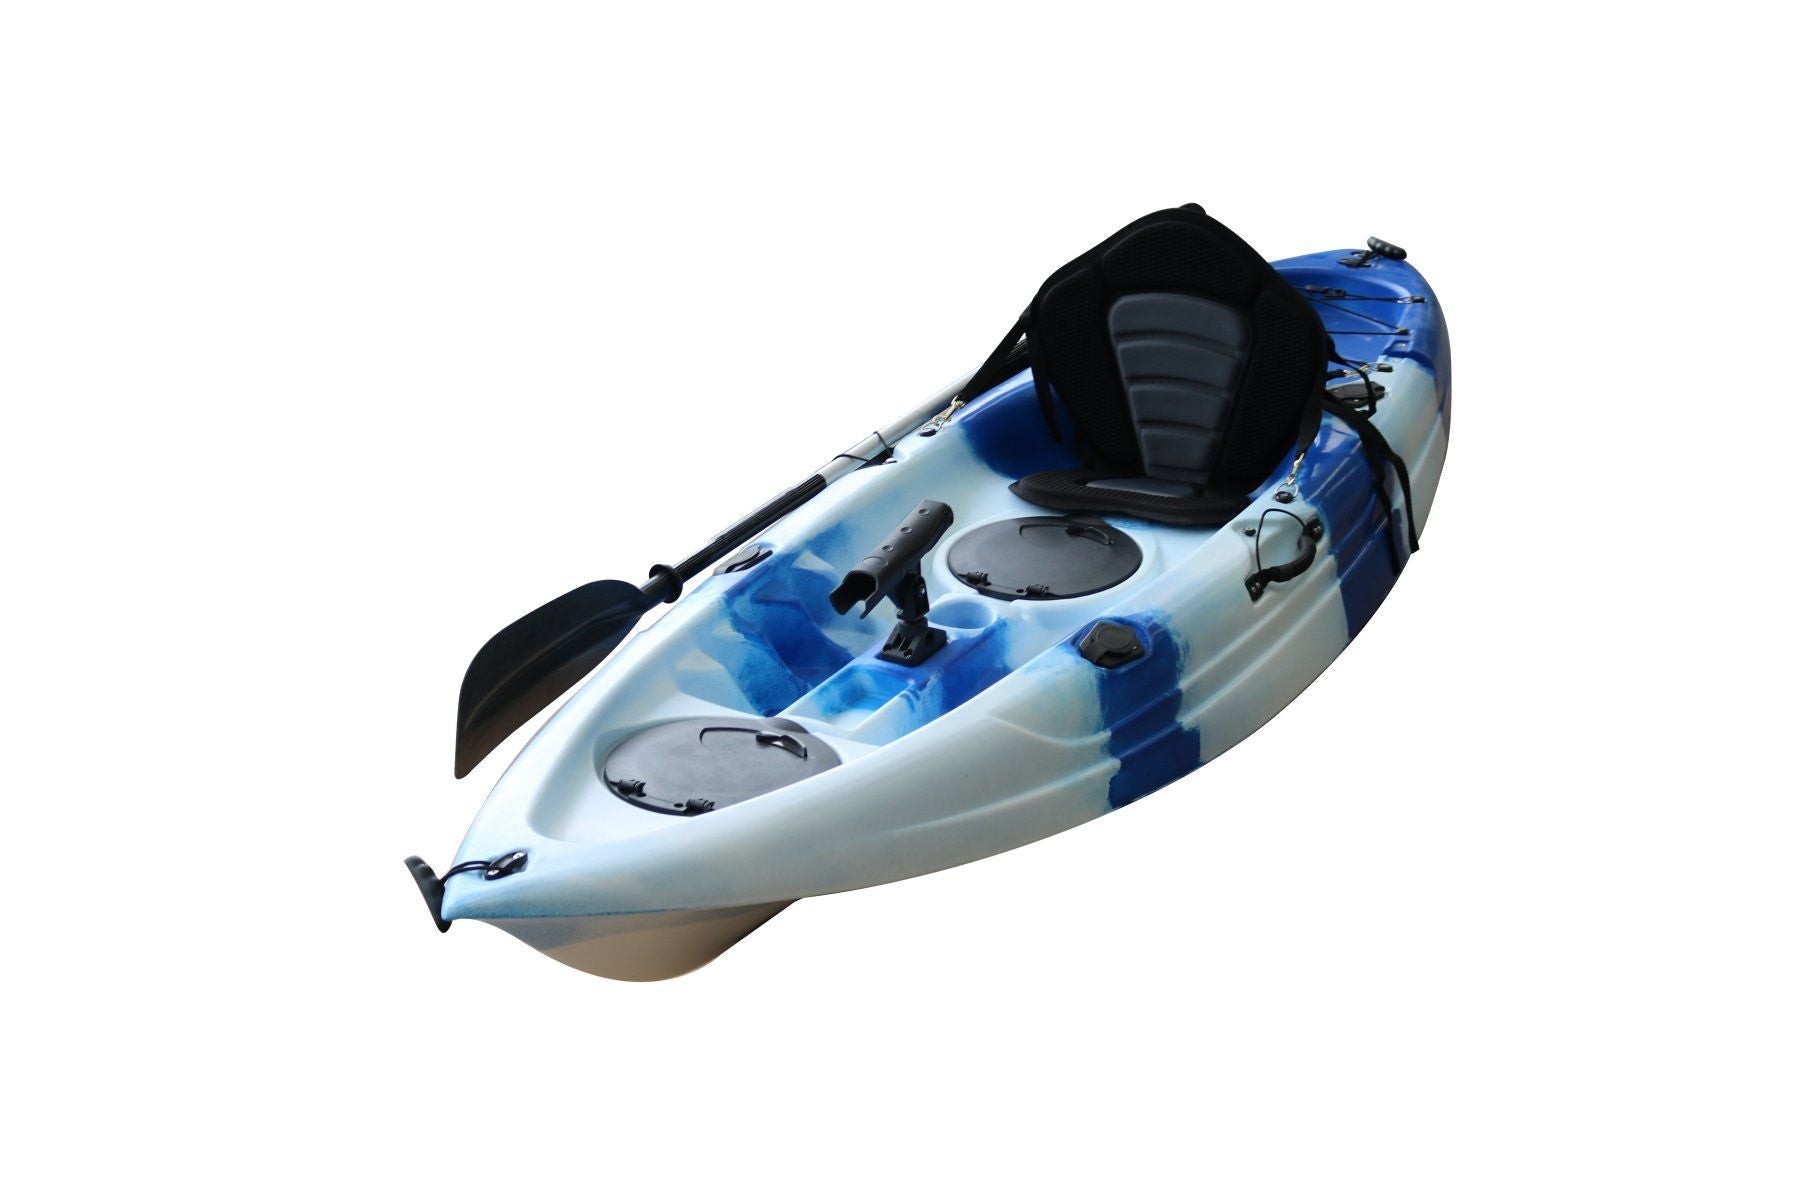 The SkipJak Atlas 2.0 - 9ft Sit On Top Kayak Kayaks Lake Land Kayaks Blue & White 